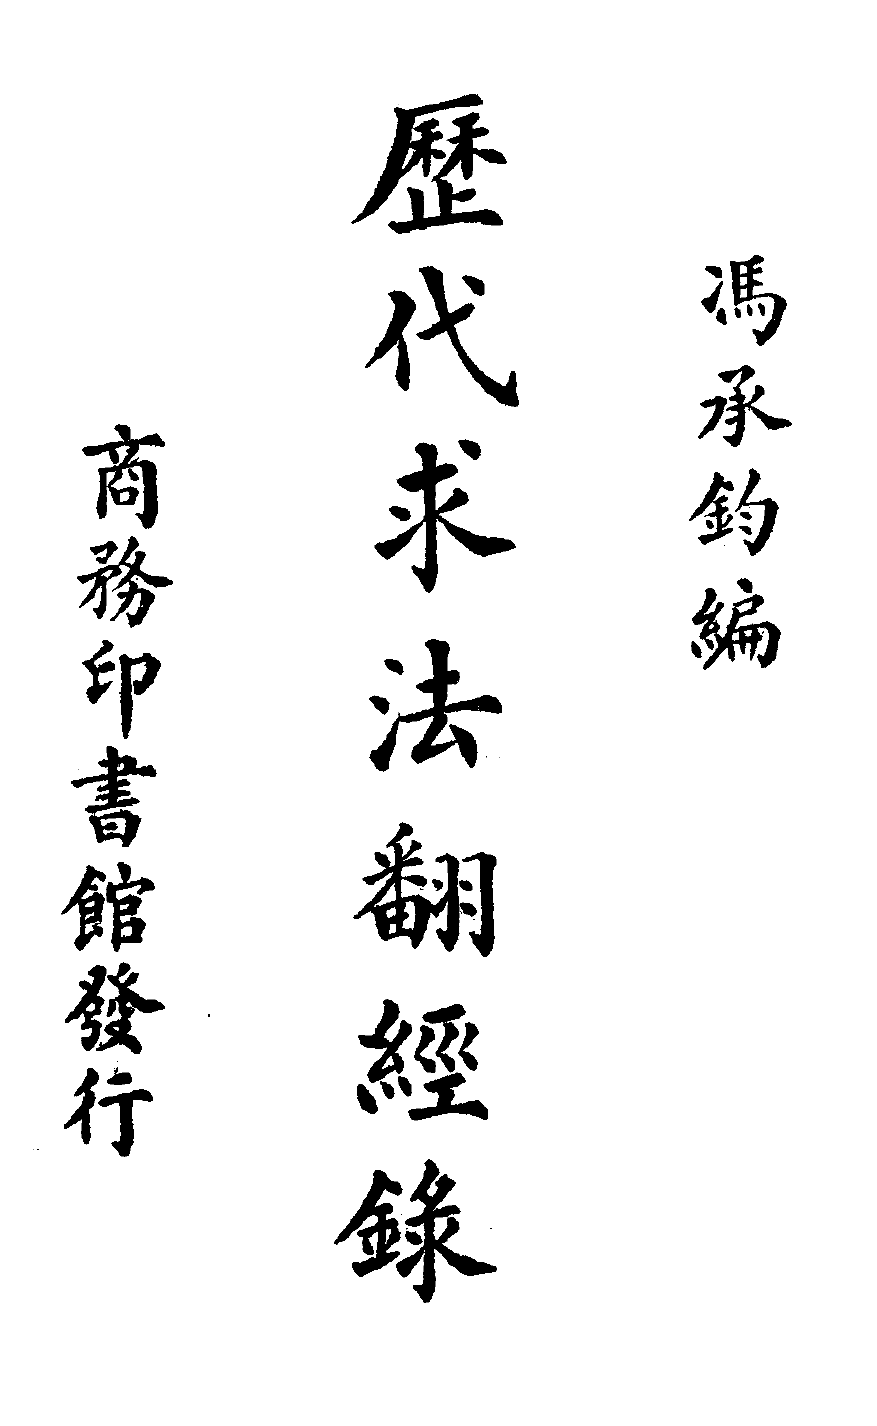 File:Lidai qiufa fanjing lu 1931.png